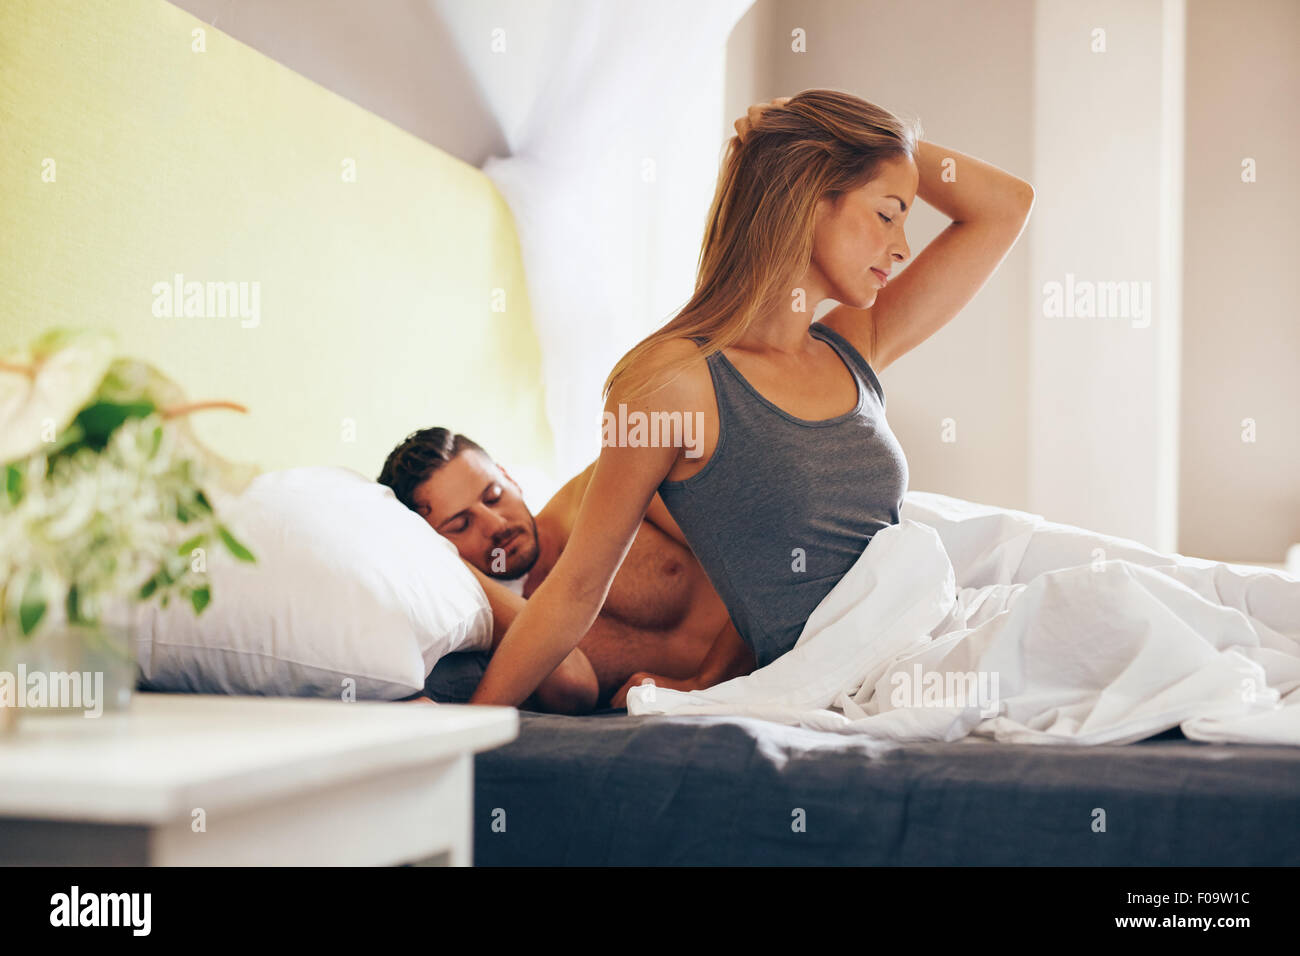 Porträt der attraktive junge Frau mit ihrem Mann schlafen hinter ihr morgens aufwachen. Kaukasische Frau sitzt am Bett Witz Stockfoto